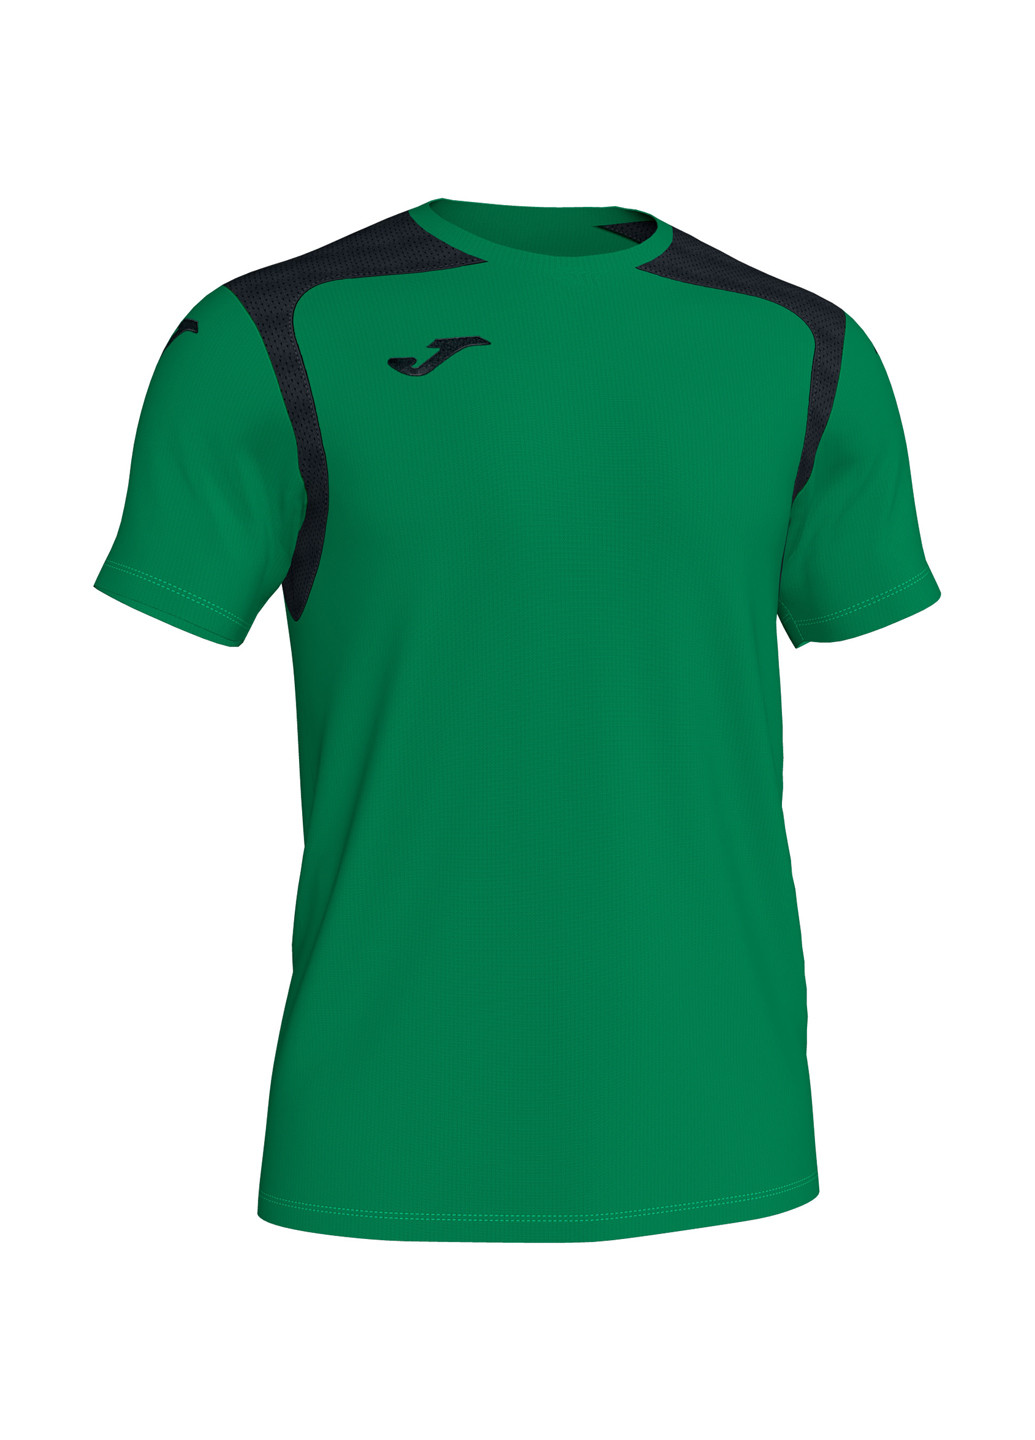 Зелена футболка Joma